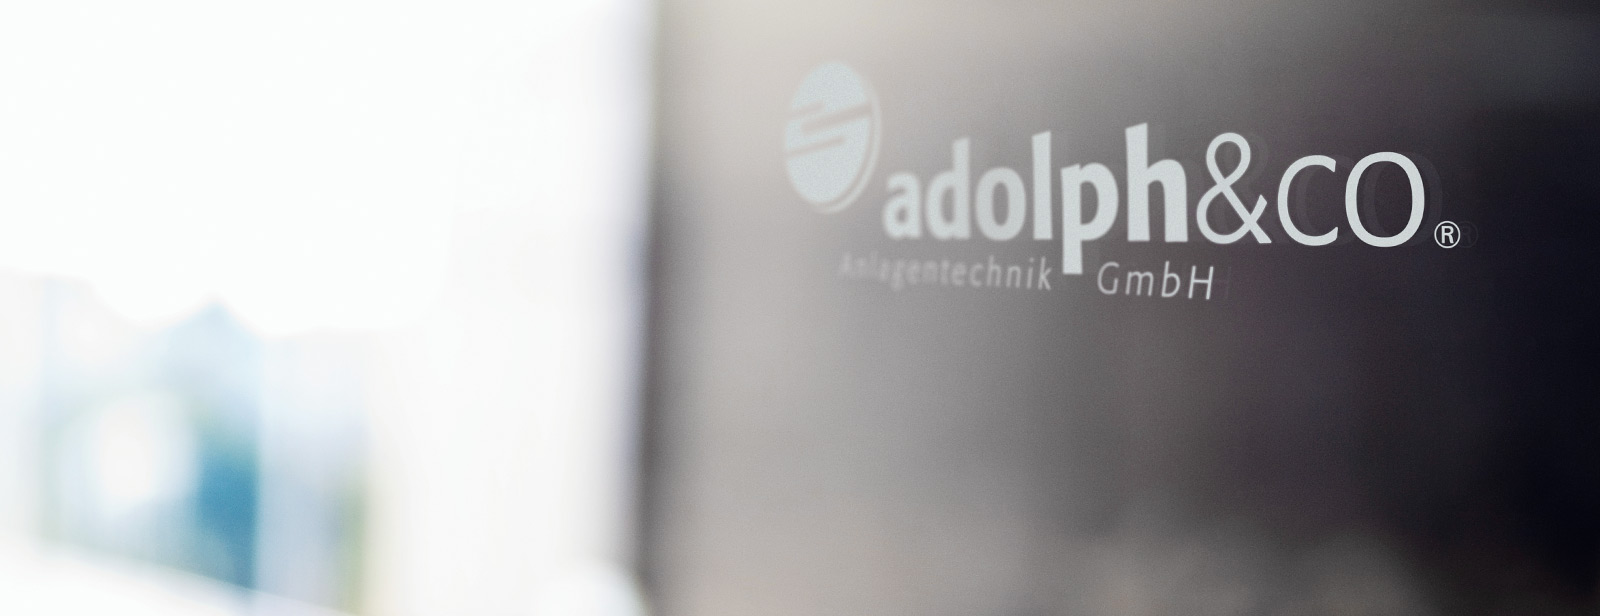 Adolph&Co. - Ihr Profi für Anlagentechnik